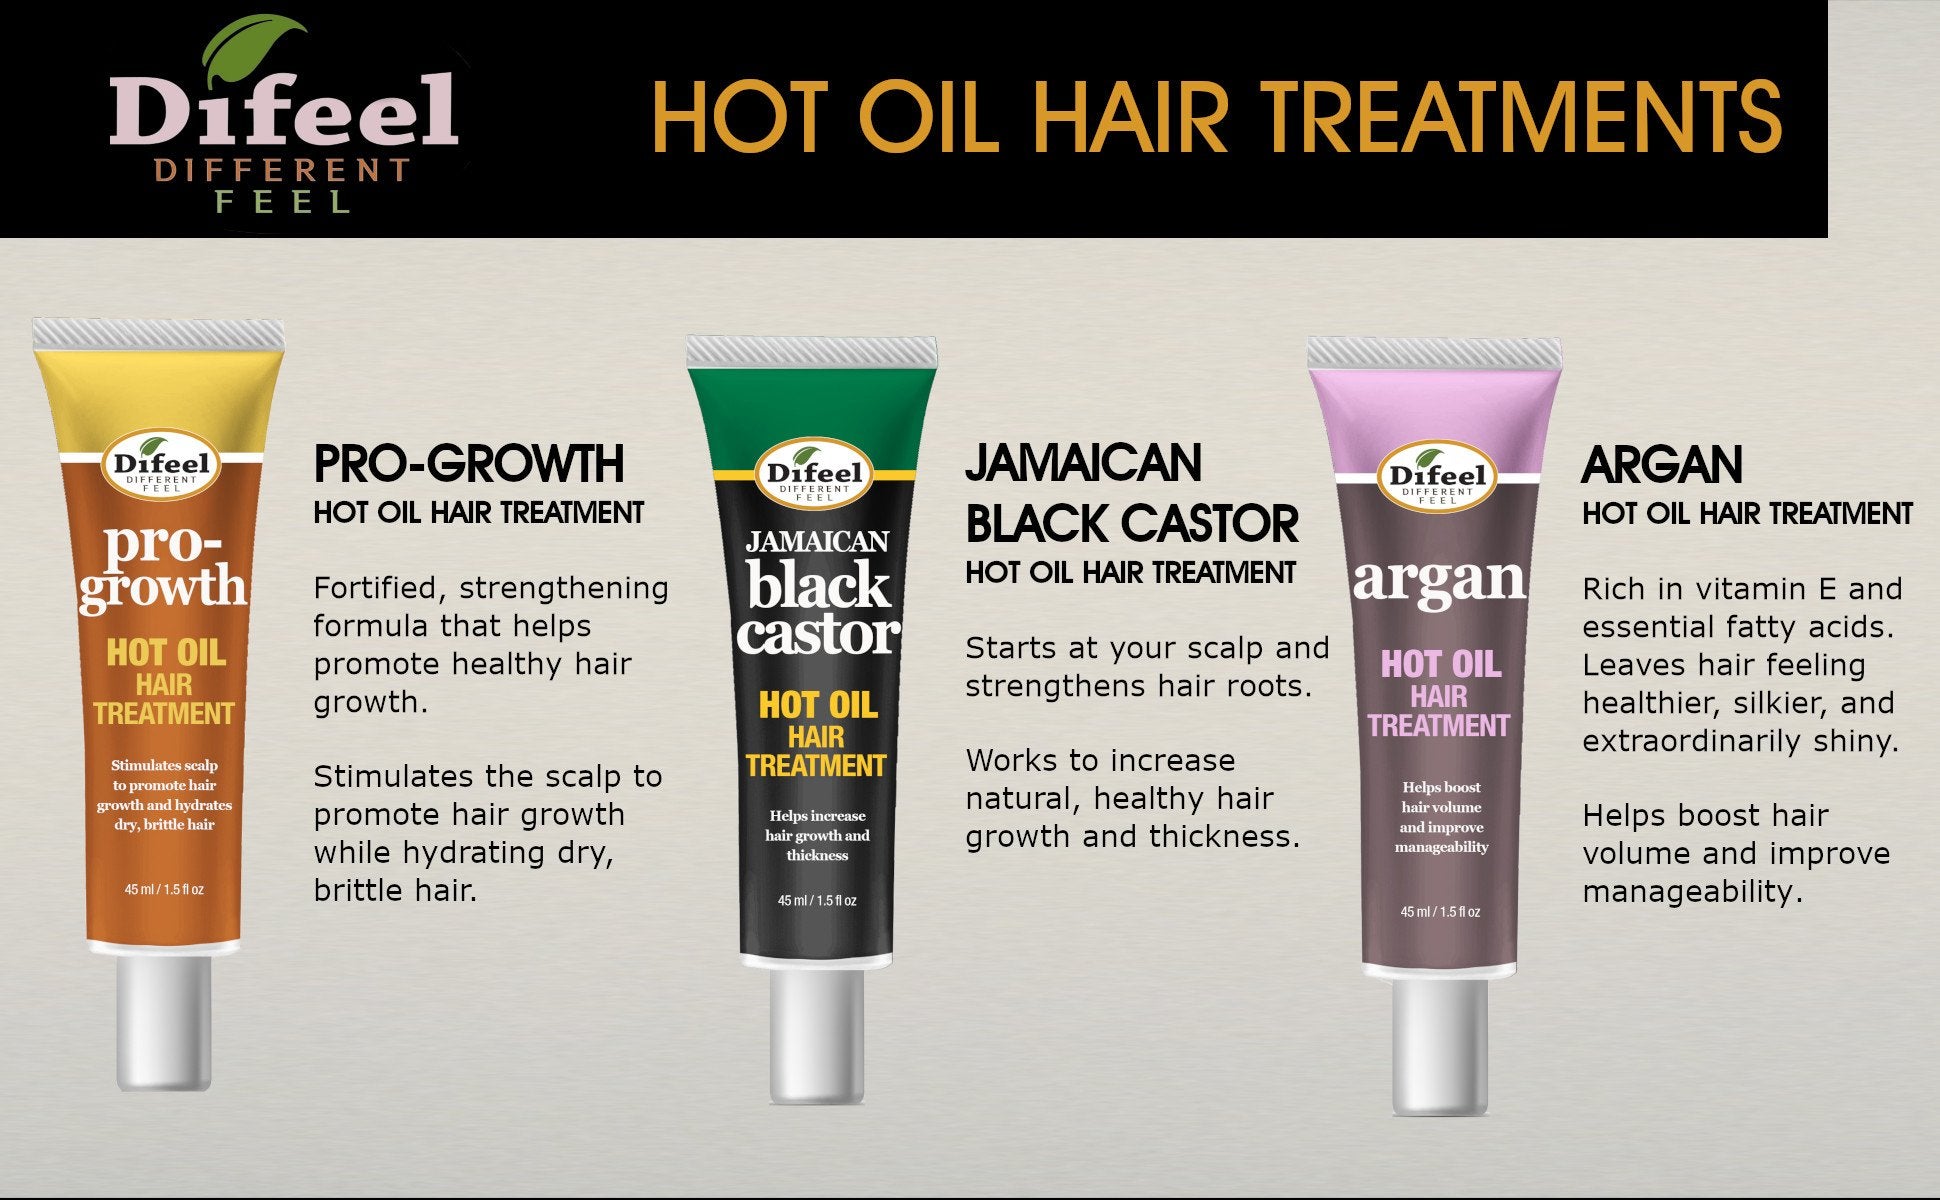 Difeel Hot Oil Hair Treatment with Jamaican Black Castor Oil 1.5 oz.